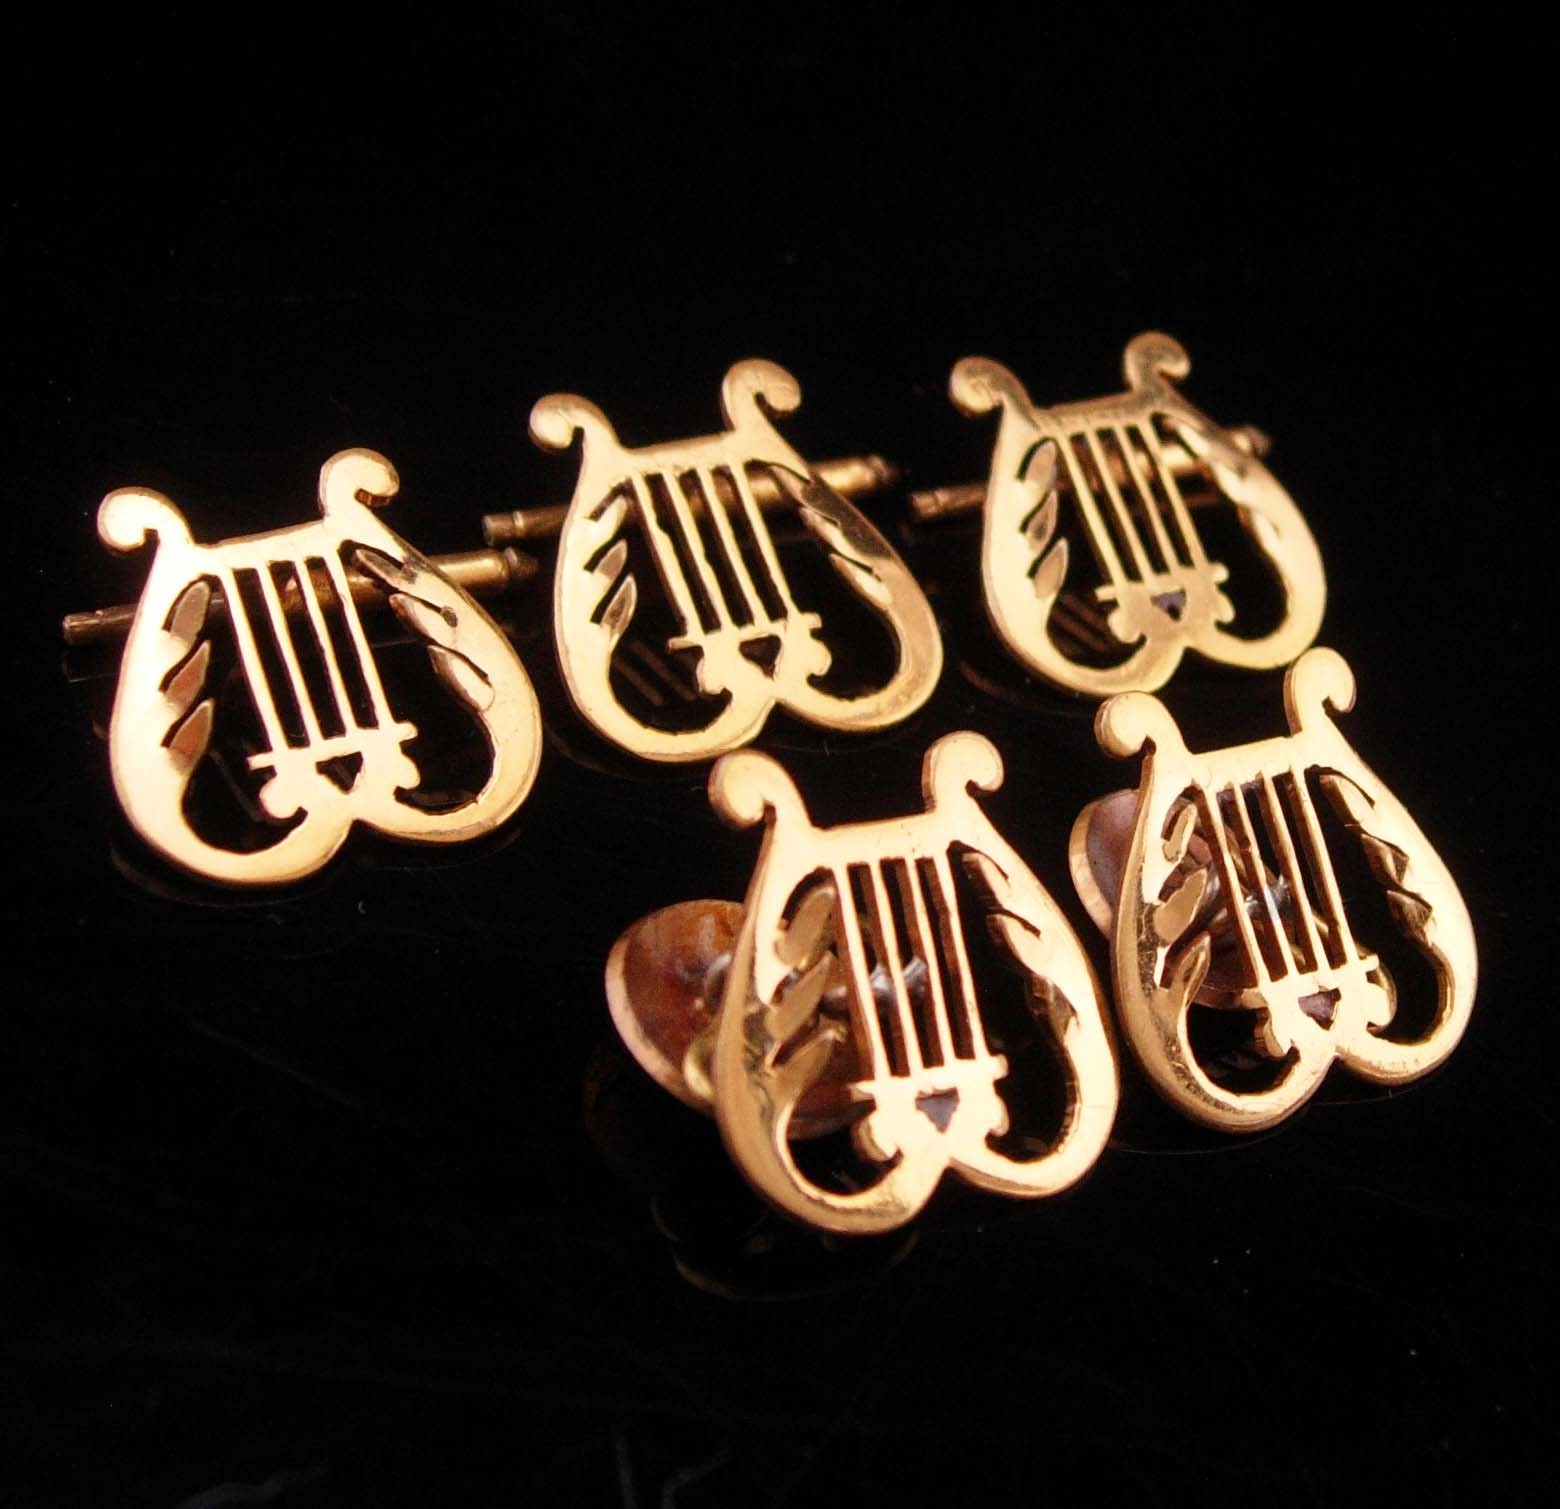 IRELAND Buttons victorian harp button studs vintage Irish wedding set gold weddi - $425.00